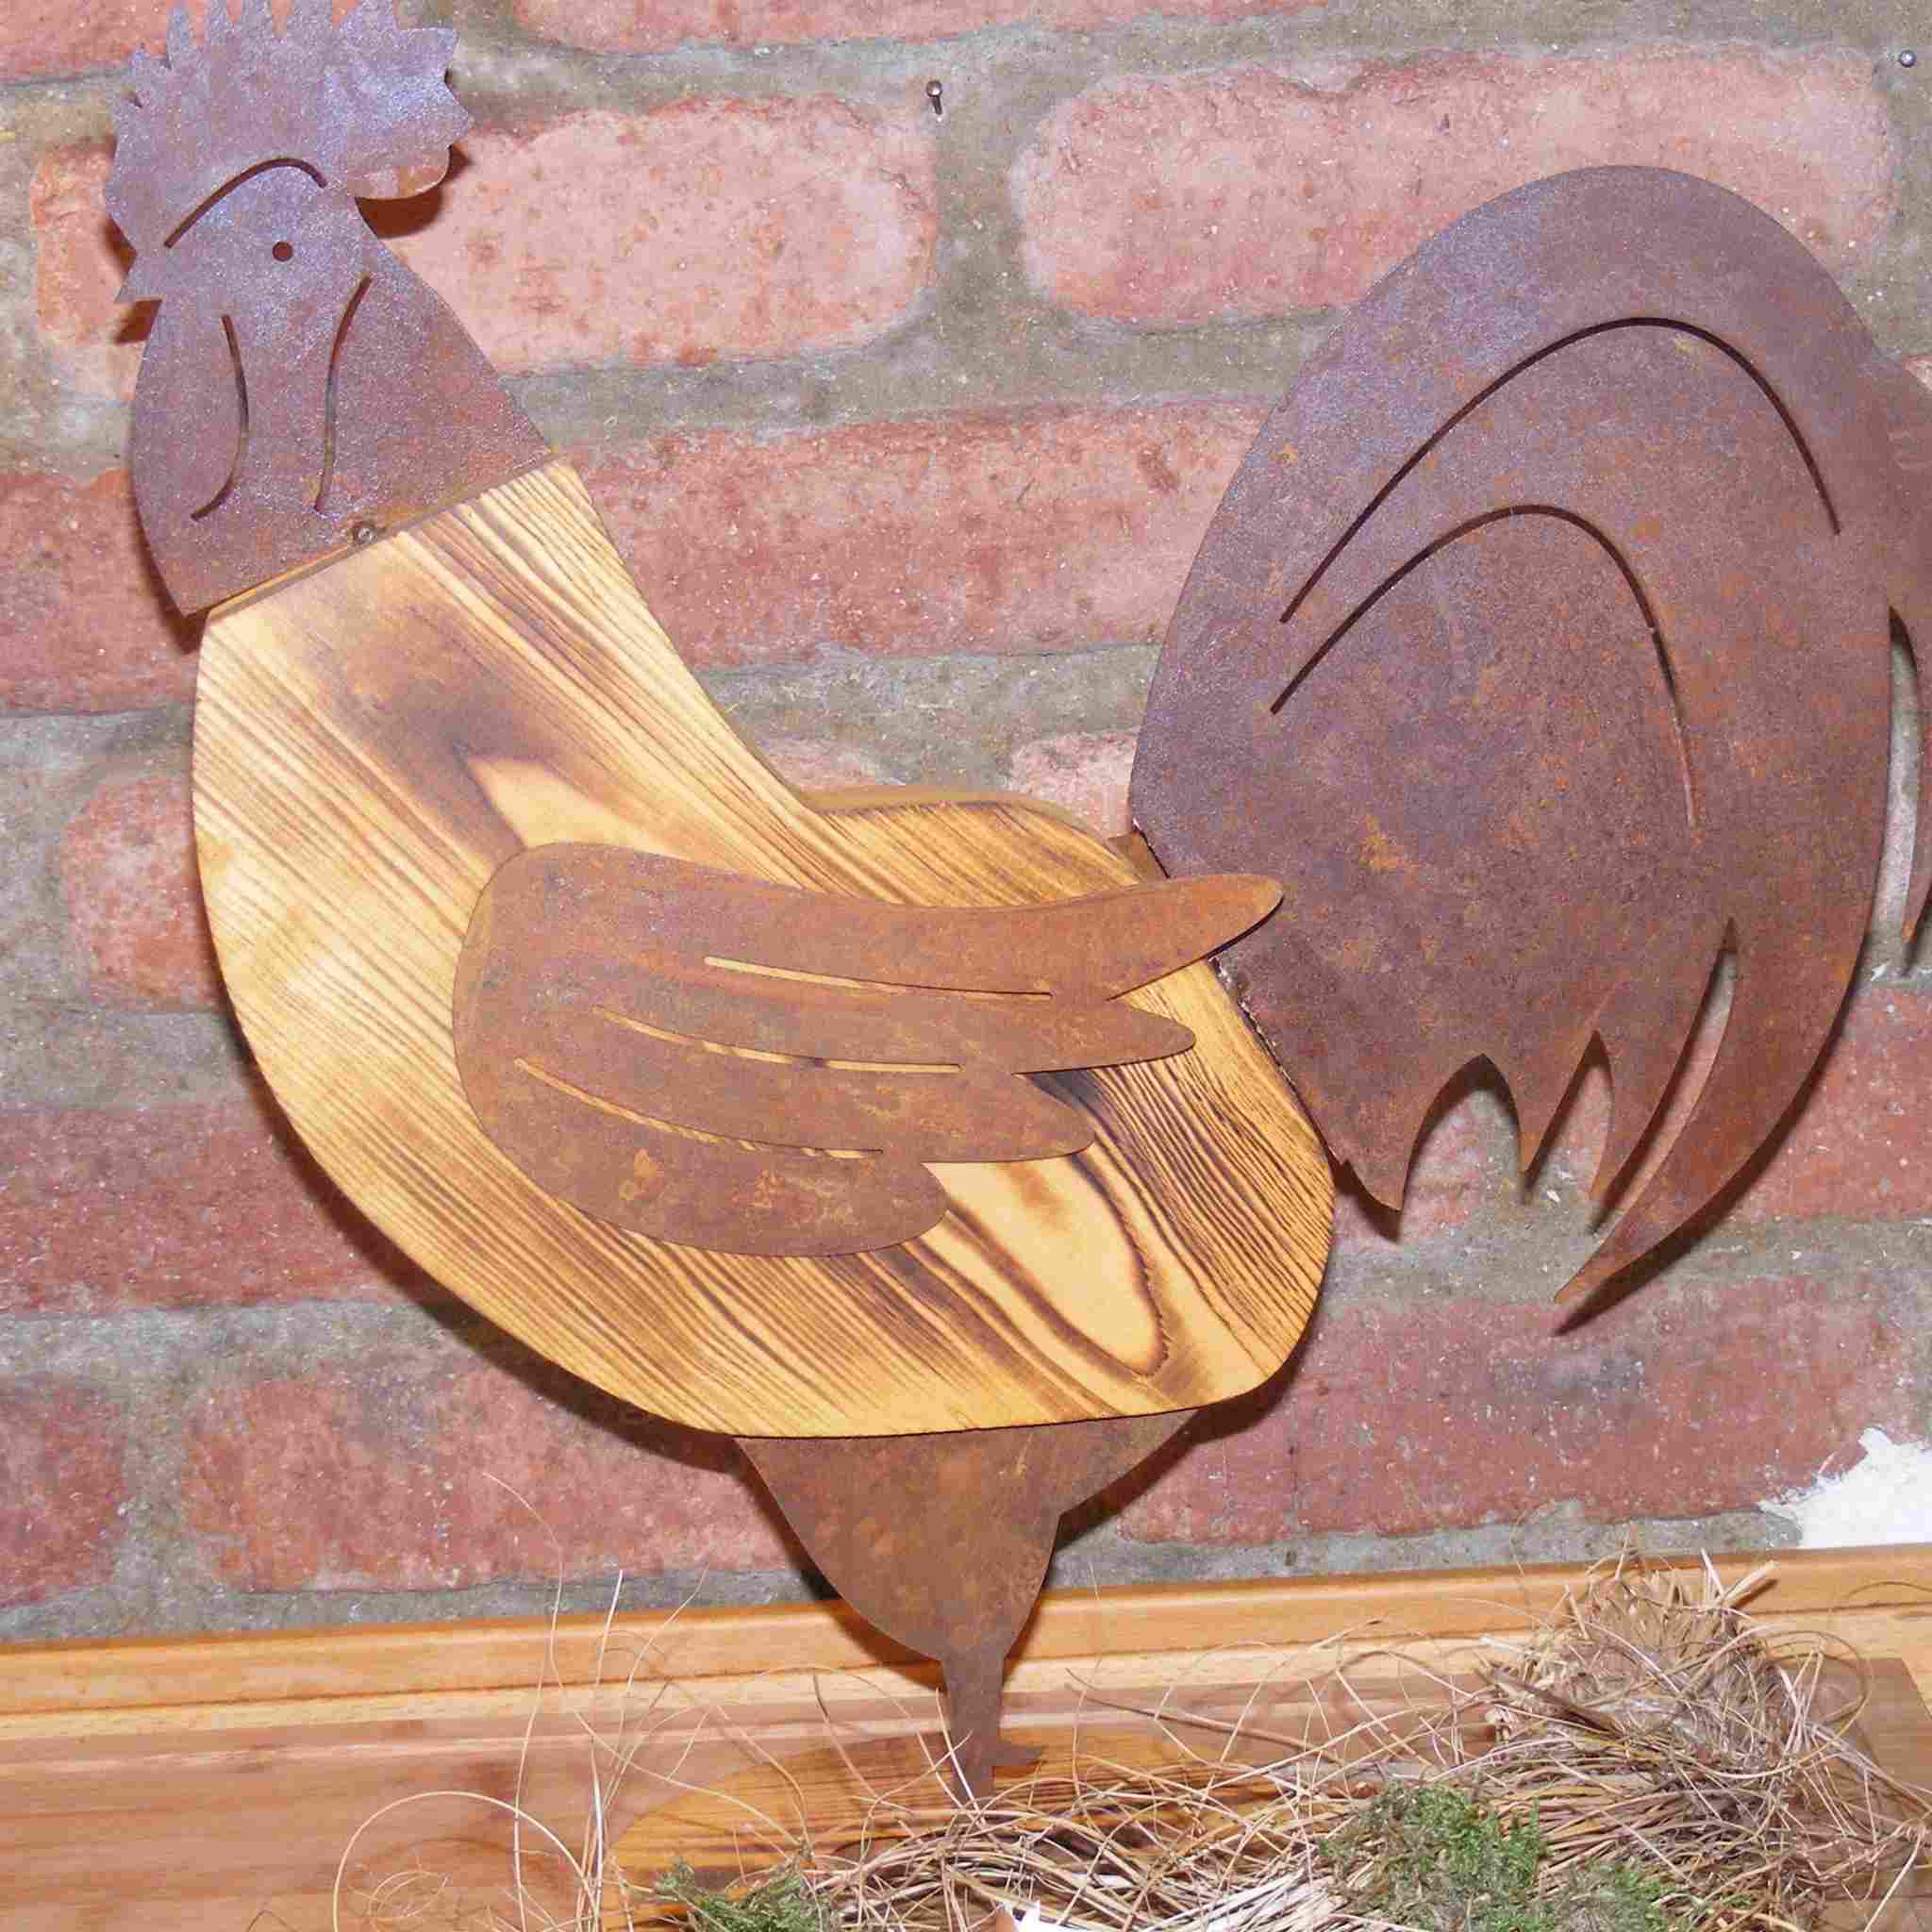 Rostige Eisenakzente verleihen diesen hölzernen Hahn- und Hennenfiguren Charme, ideal für Garten- oder Wohnraumdekorationen